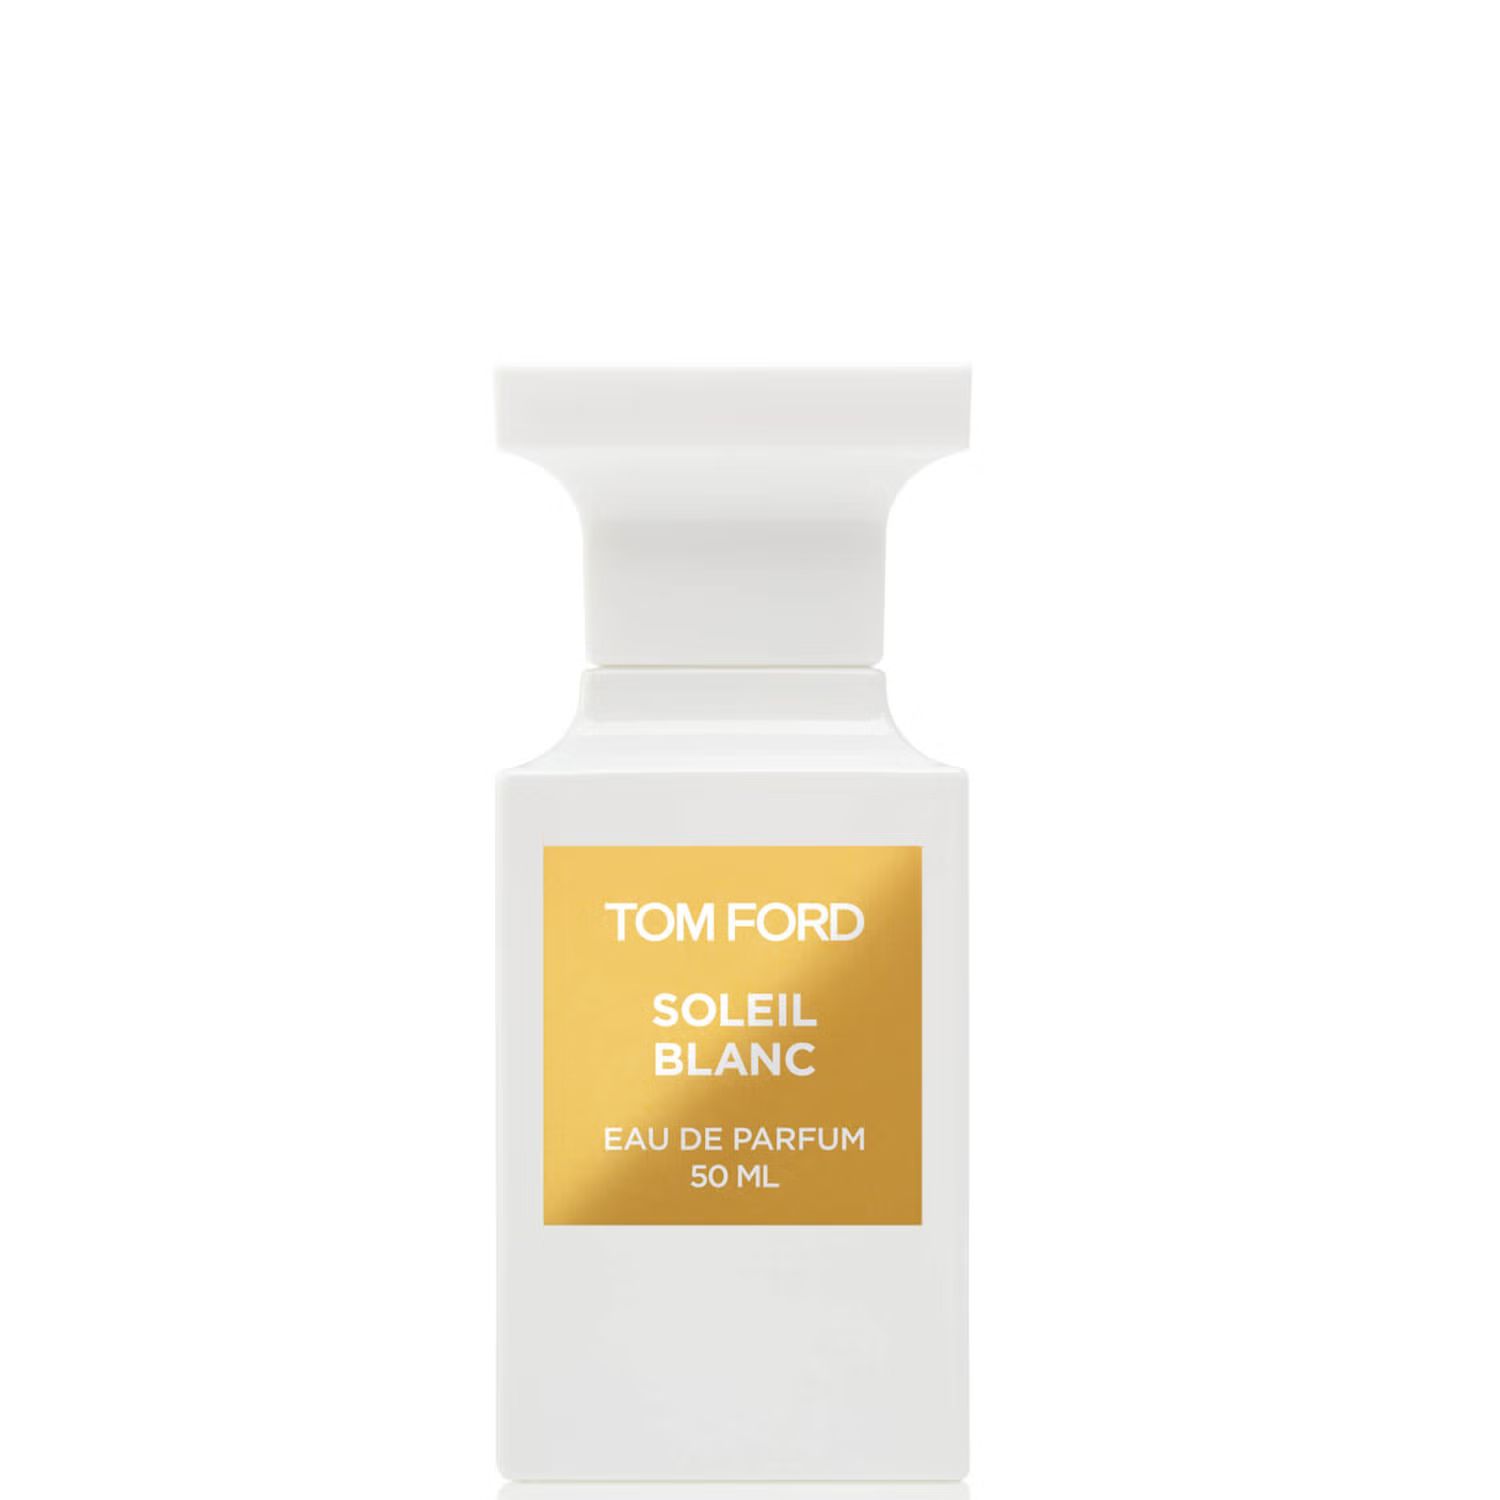 Tom Ford Soleil Blanc Eau de Parfum Spray 50ml | Look Fantastic (UK)